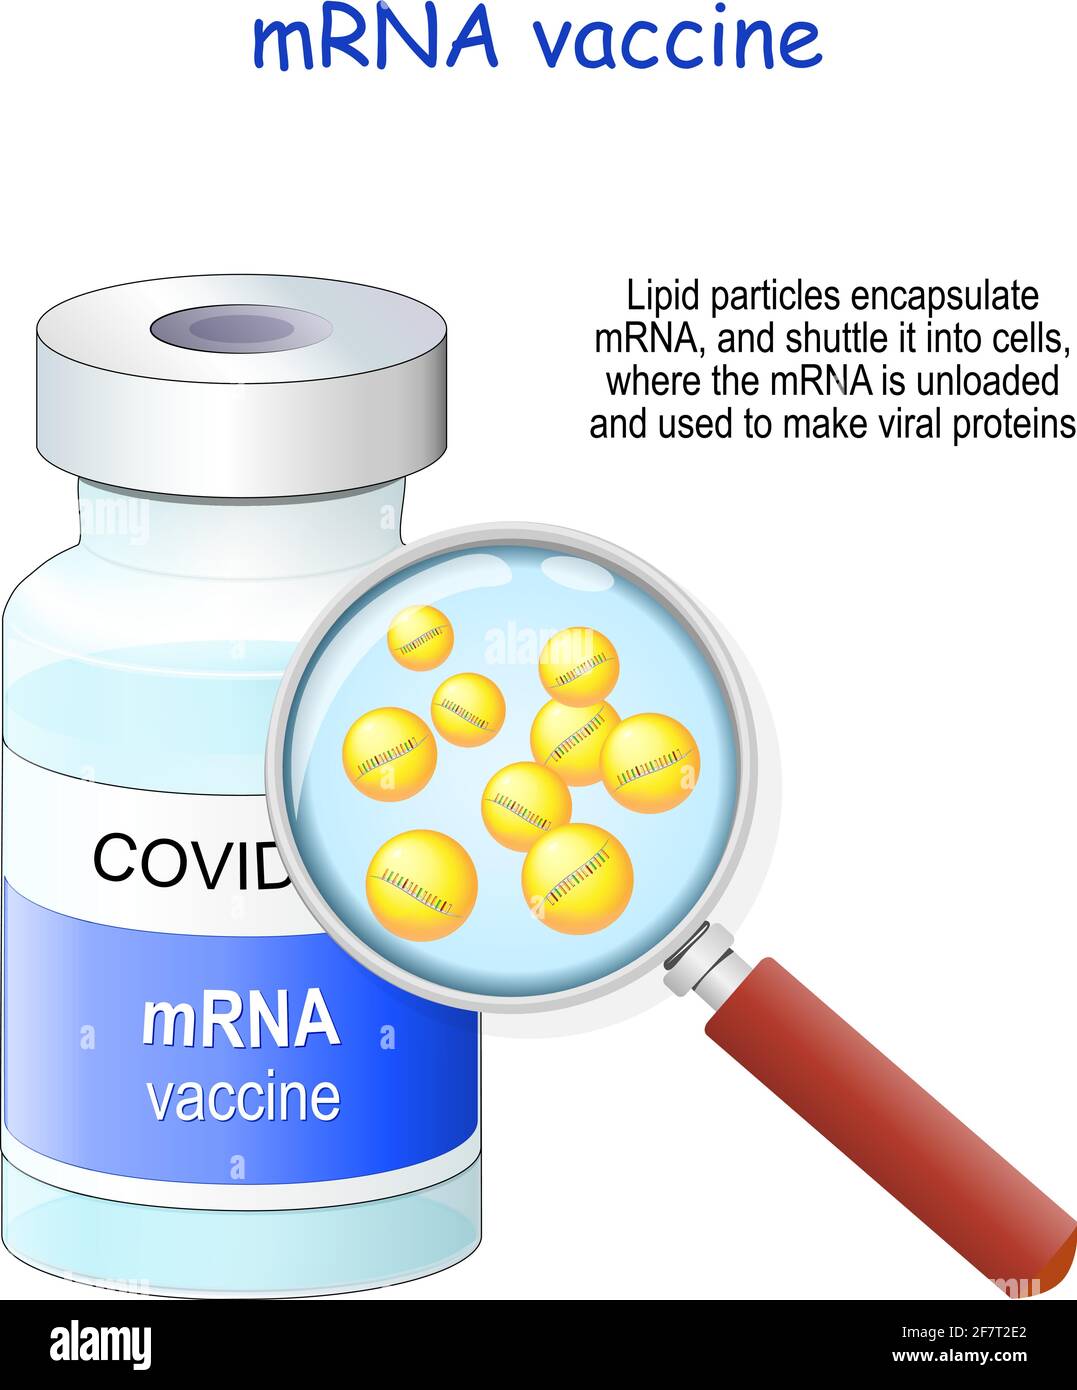 Coronavirus Covid-19. vaccin à ARN messager (ARNm). Flacon de vaccin et loupe. Illustration vectorielle. Les particules de lipides encapsulent l'ARNm et se ferment Illustration de Vecteur